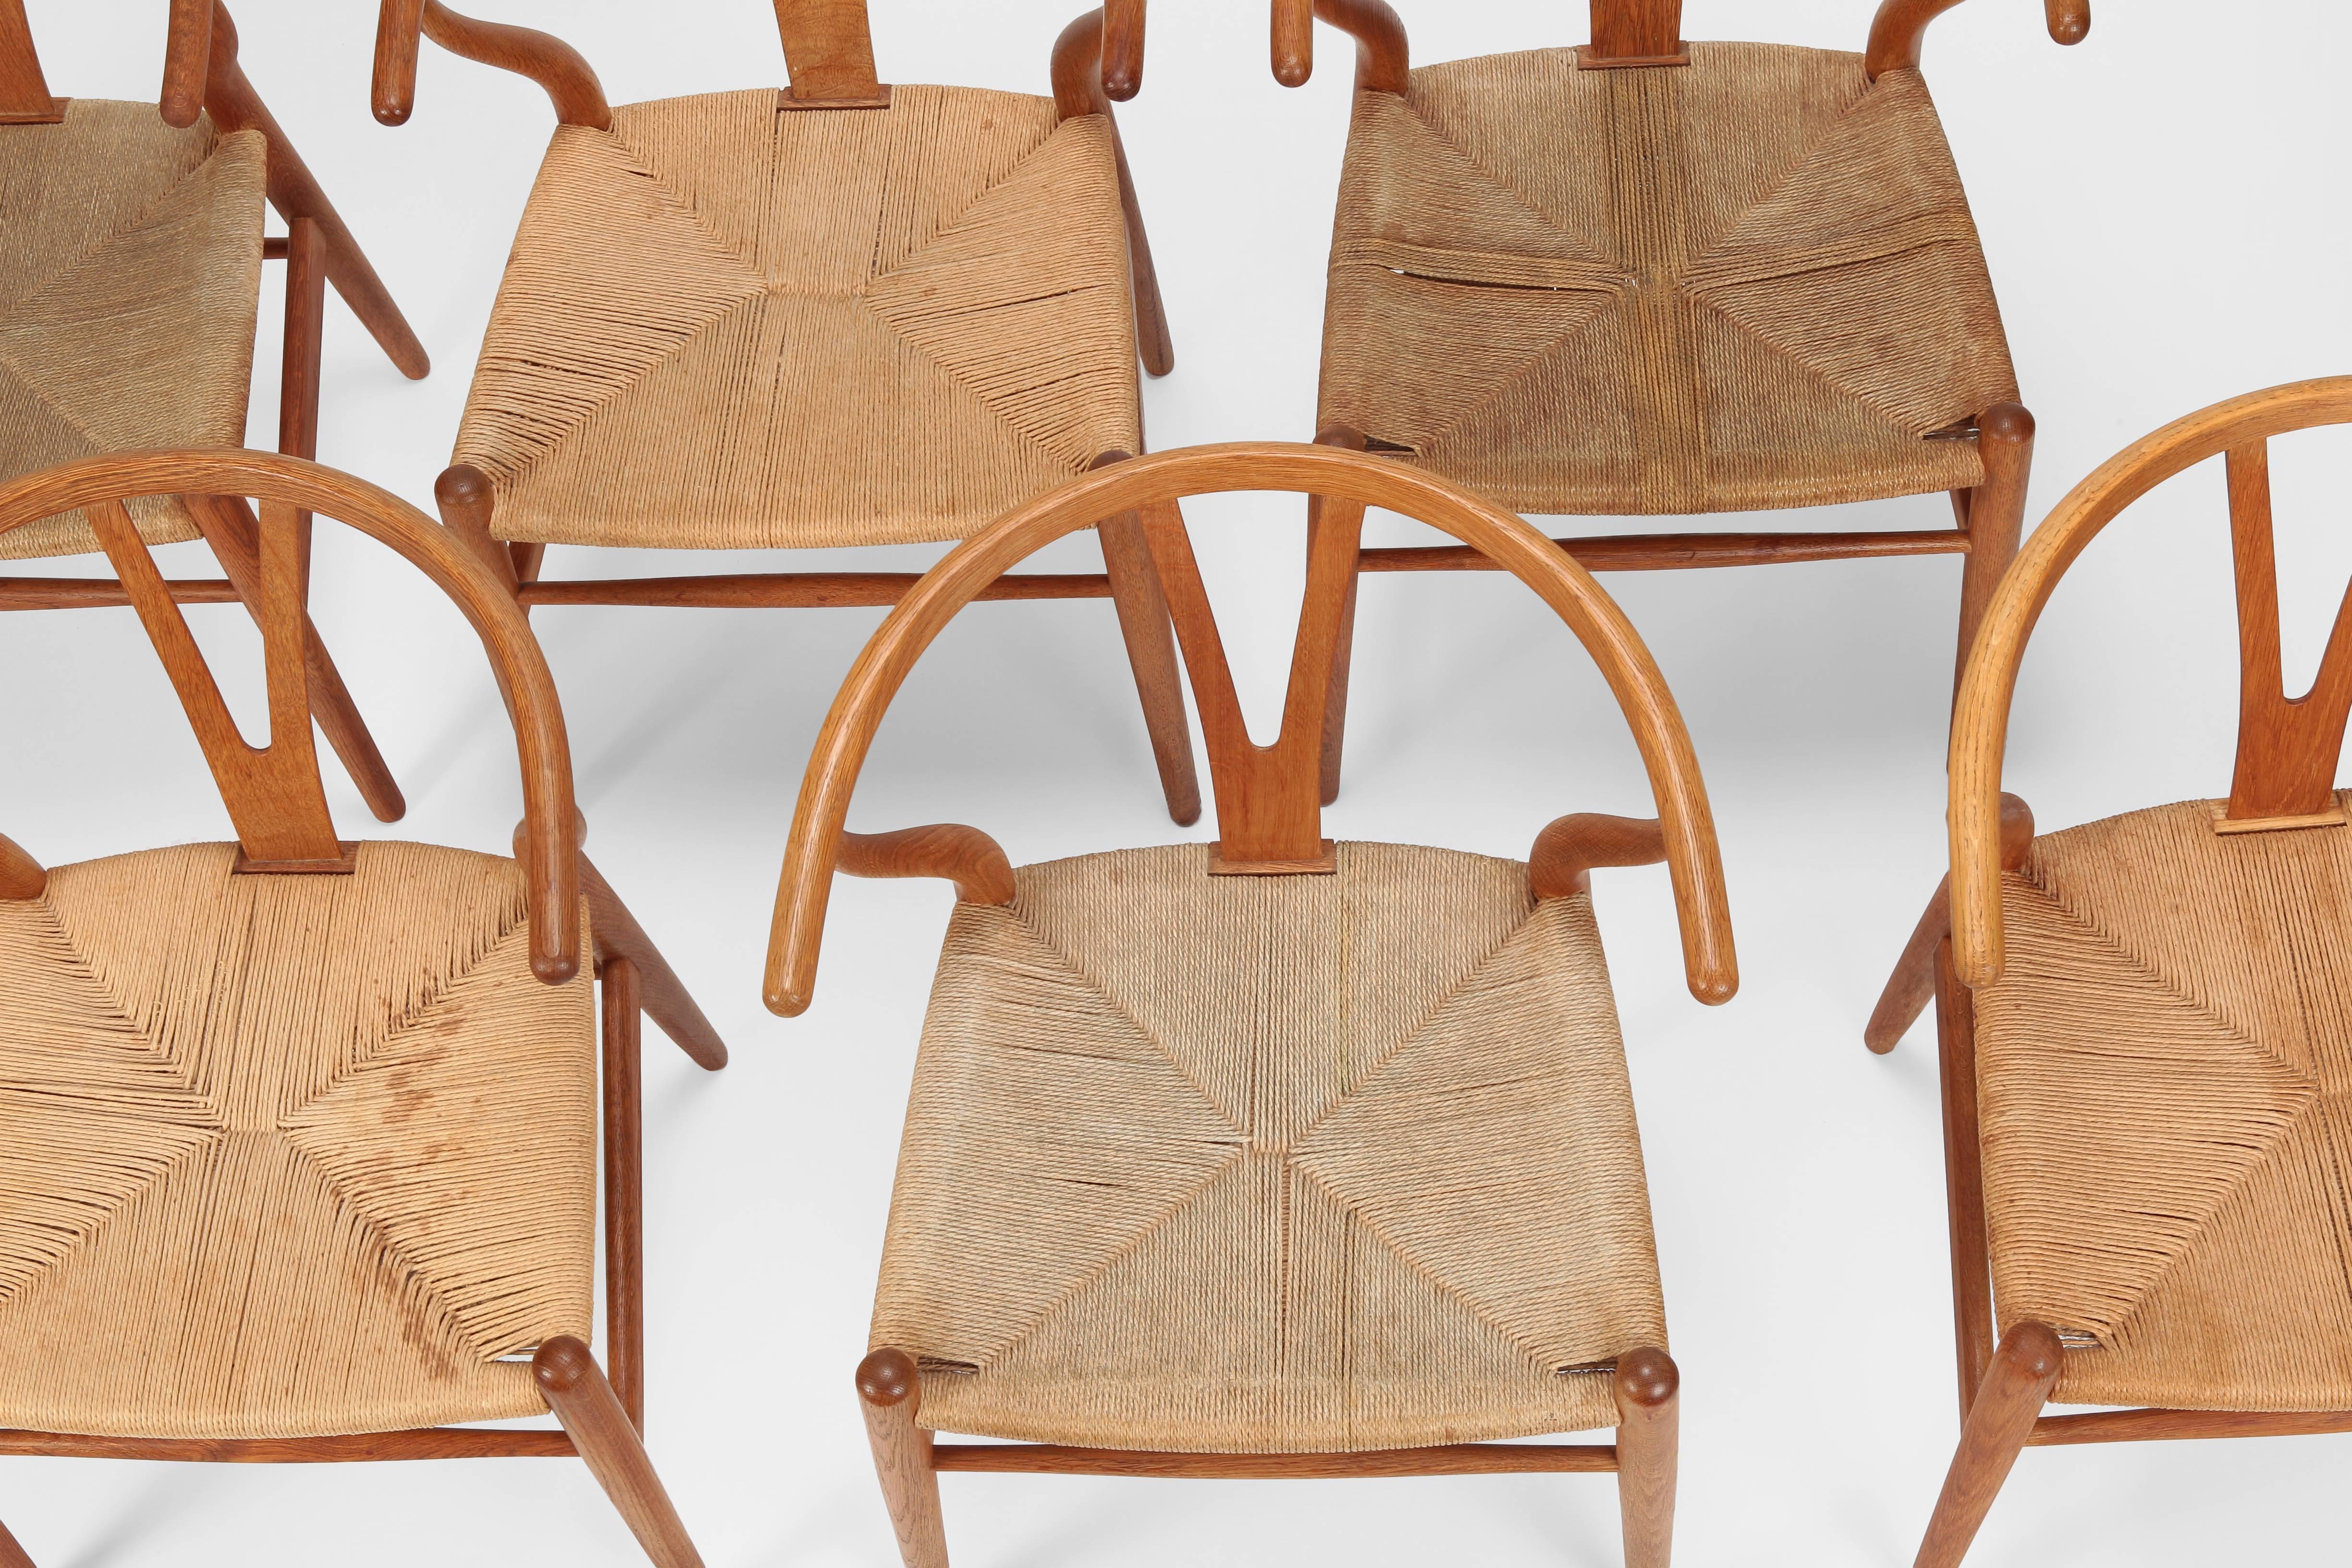 Mid-20th Century Hans J. Wegner “Y-Chairs” Model CH24 Carl Hansen & Son, 1950s